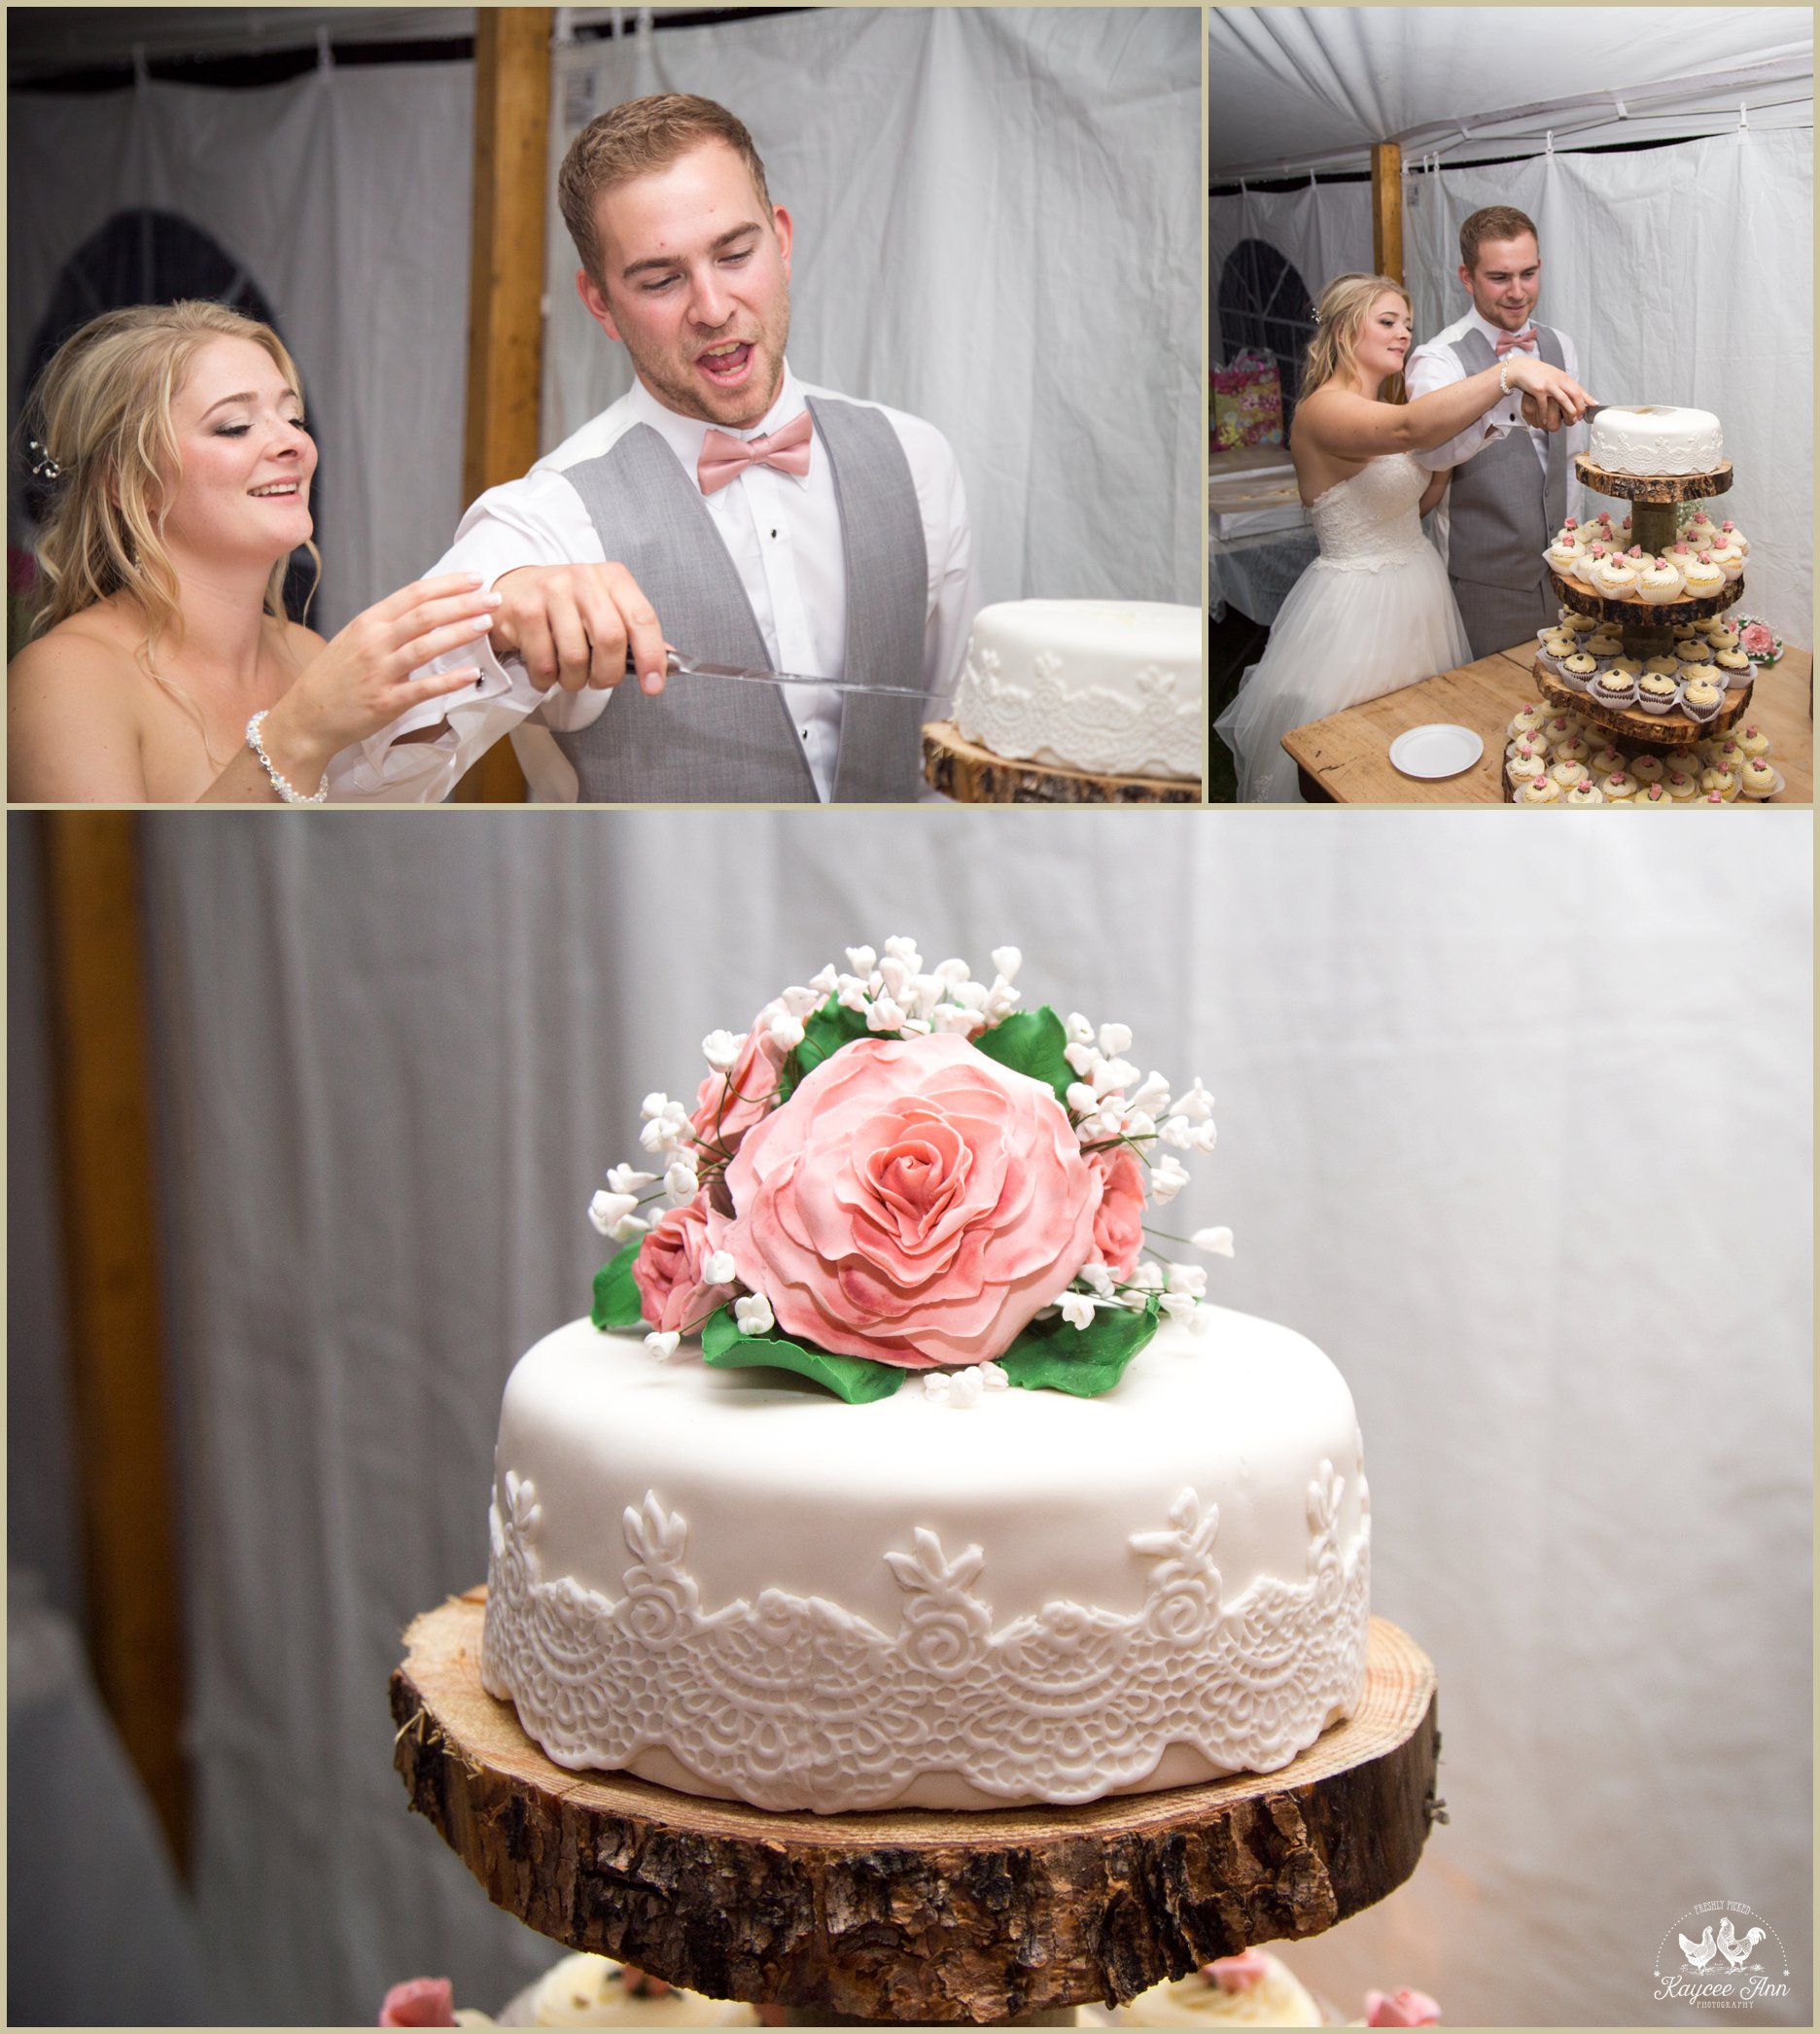 fondant, wedding, diy, rose, pink, flower, tree cookie, cake stand, smile, eat cake